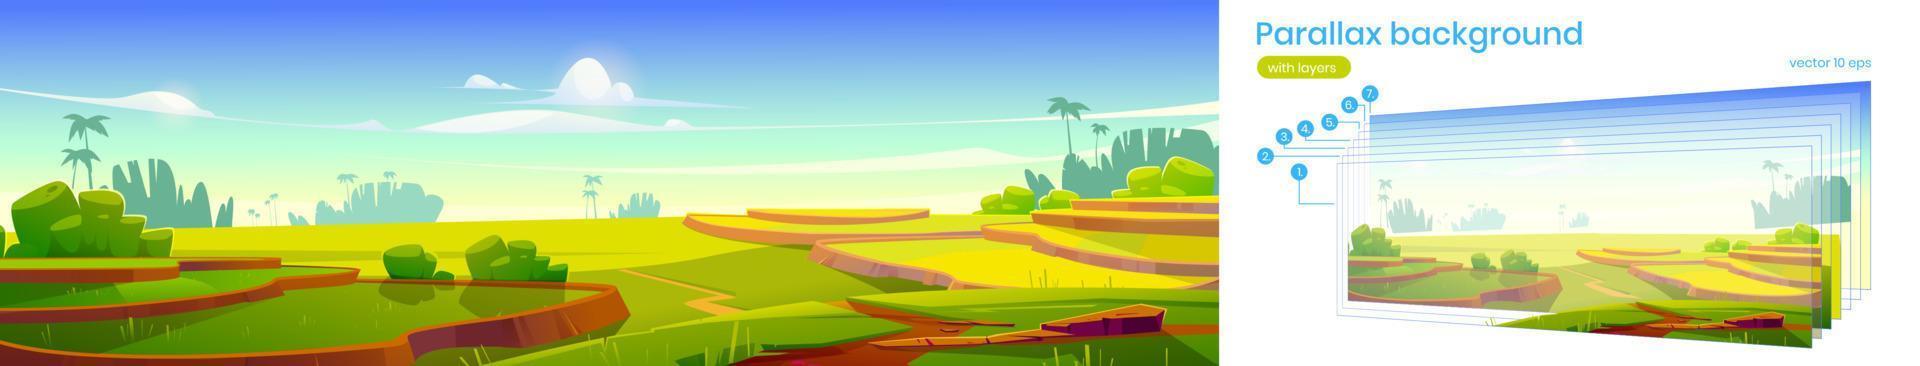 rizières asiatiques terrasses parallaxe 2d paysage vecteur